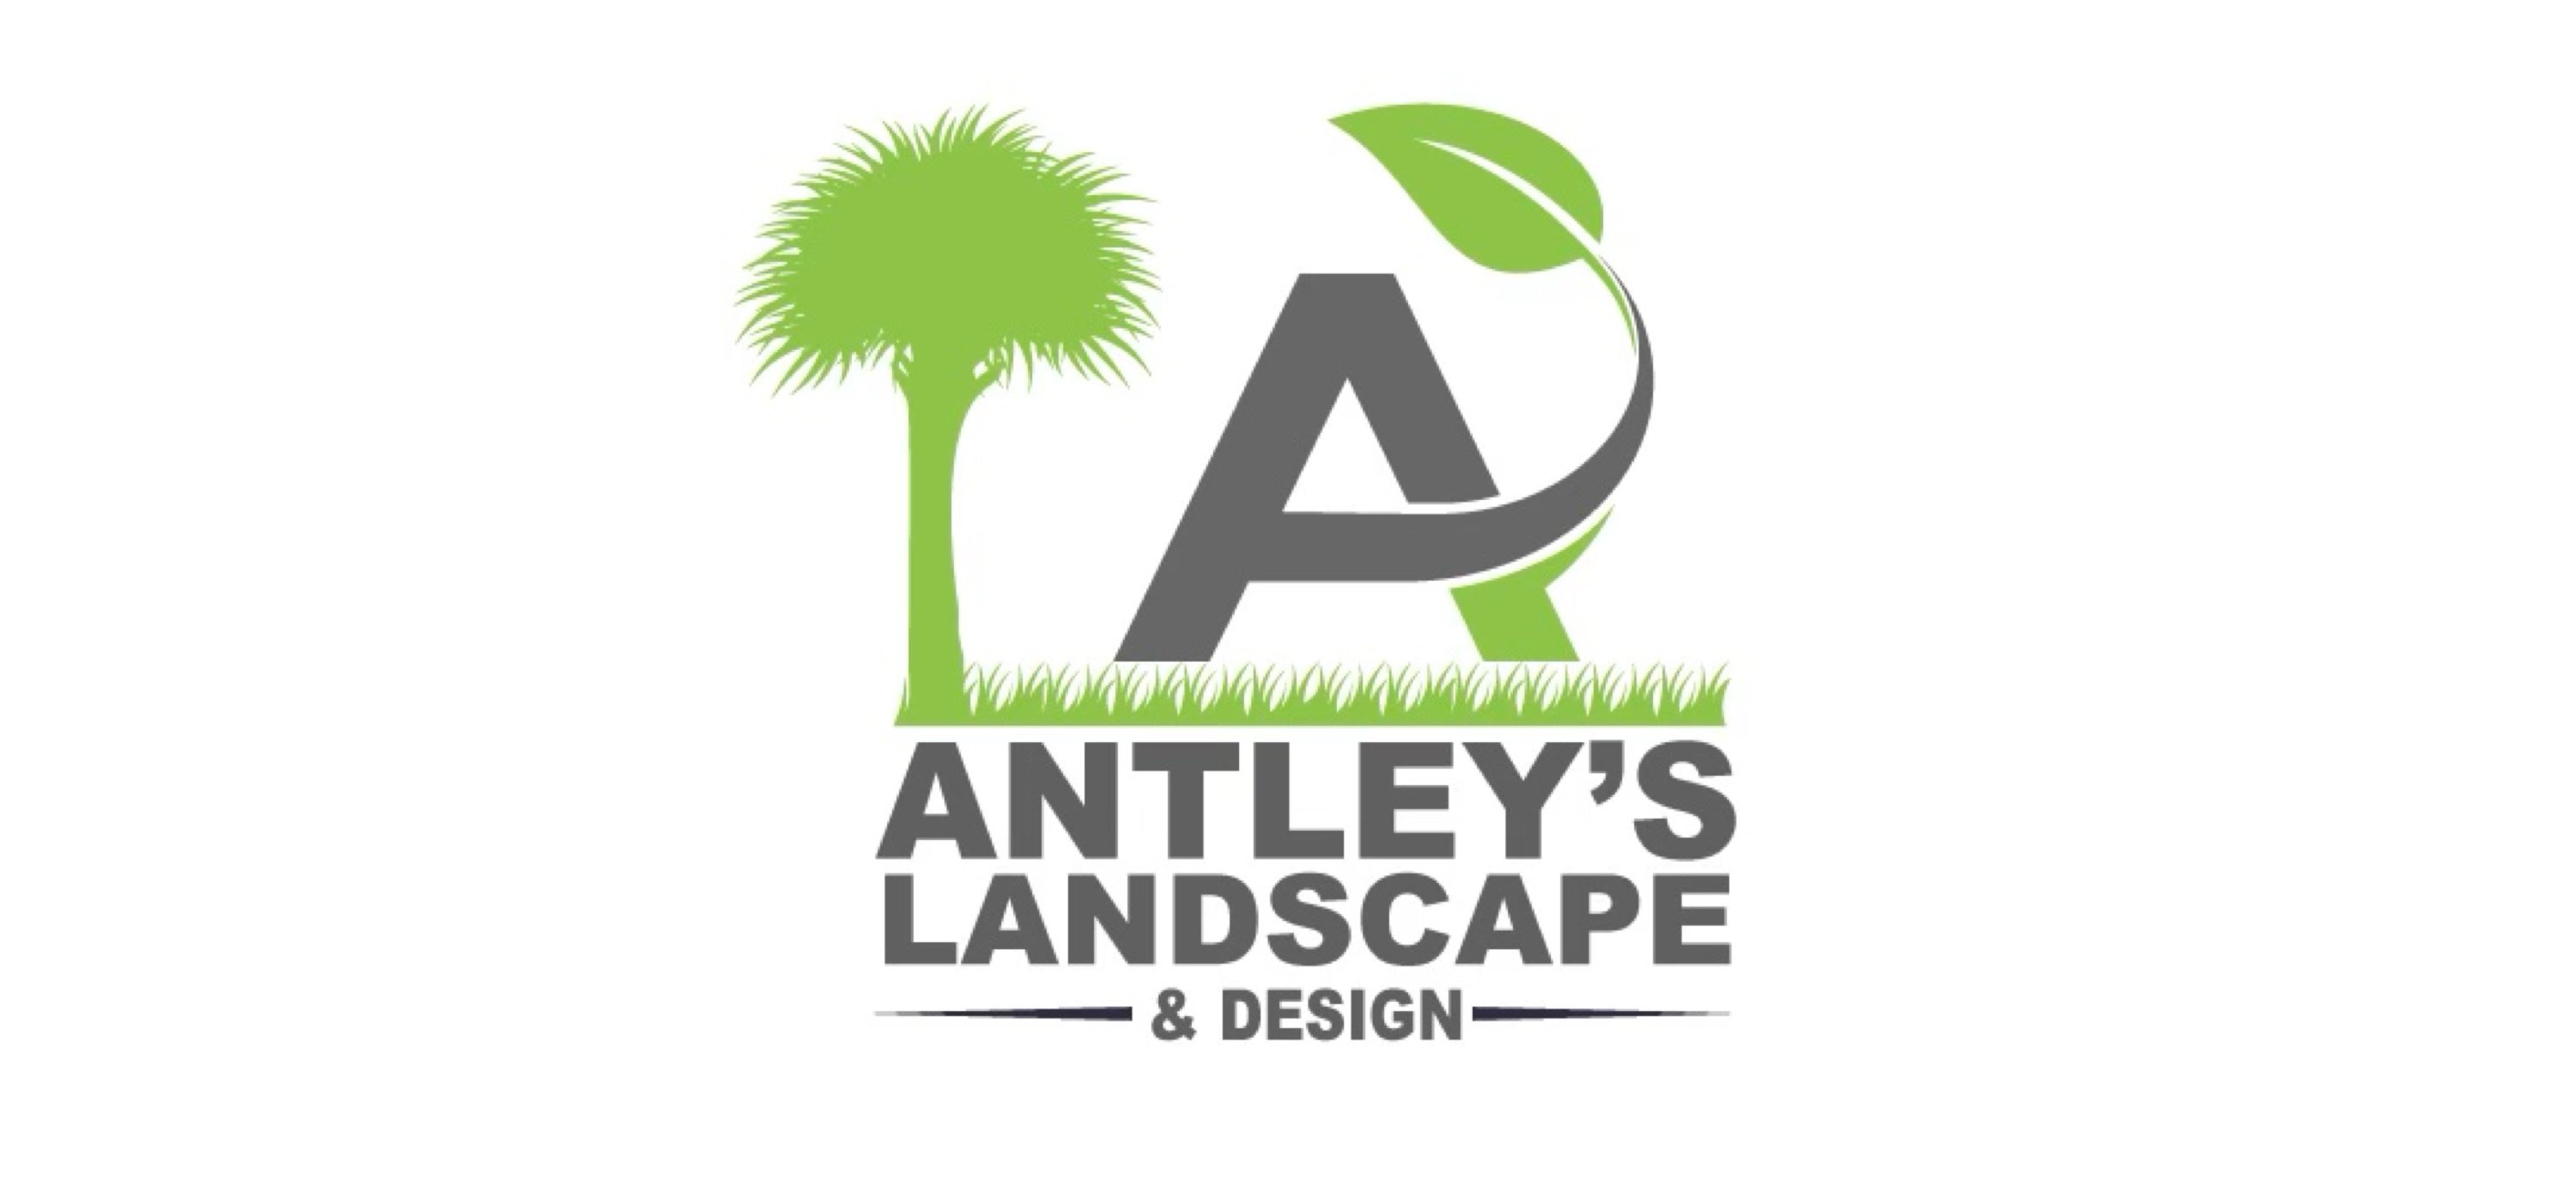 Antley's Landscape & Design, LLC Logo